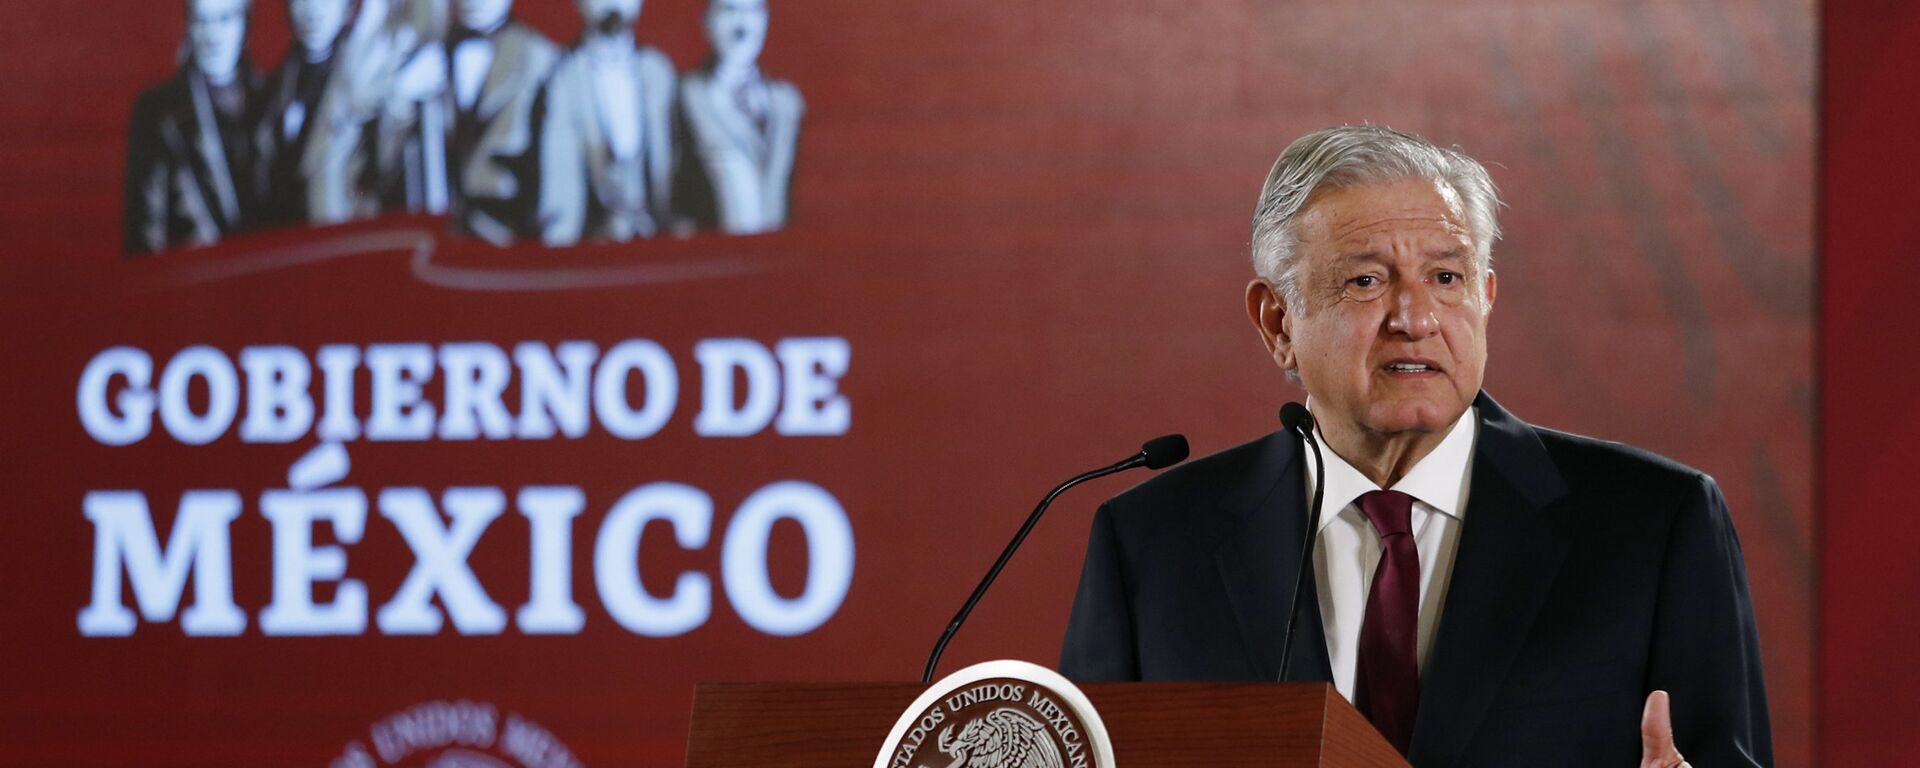 Andrés Manuel López Obrador, presidente de México - Sputnik Mundo, 1920, 12.07.2021